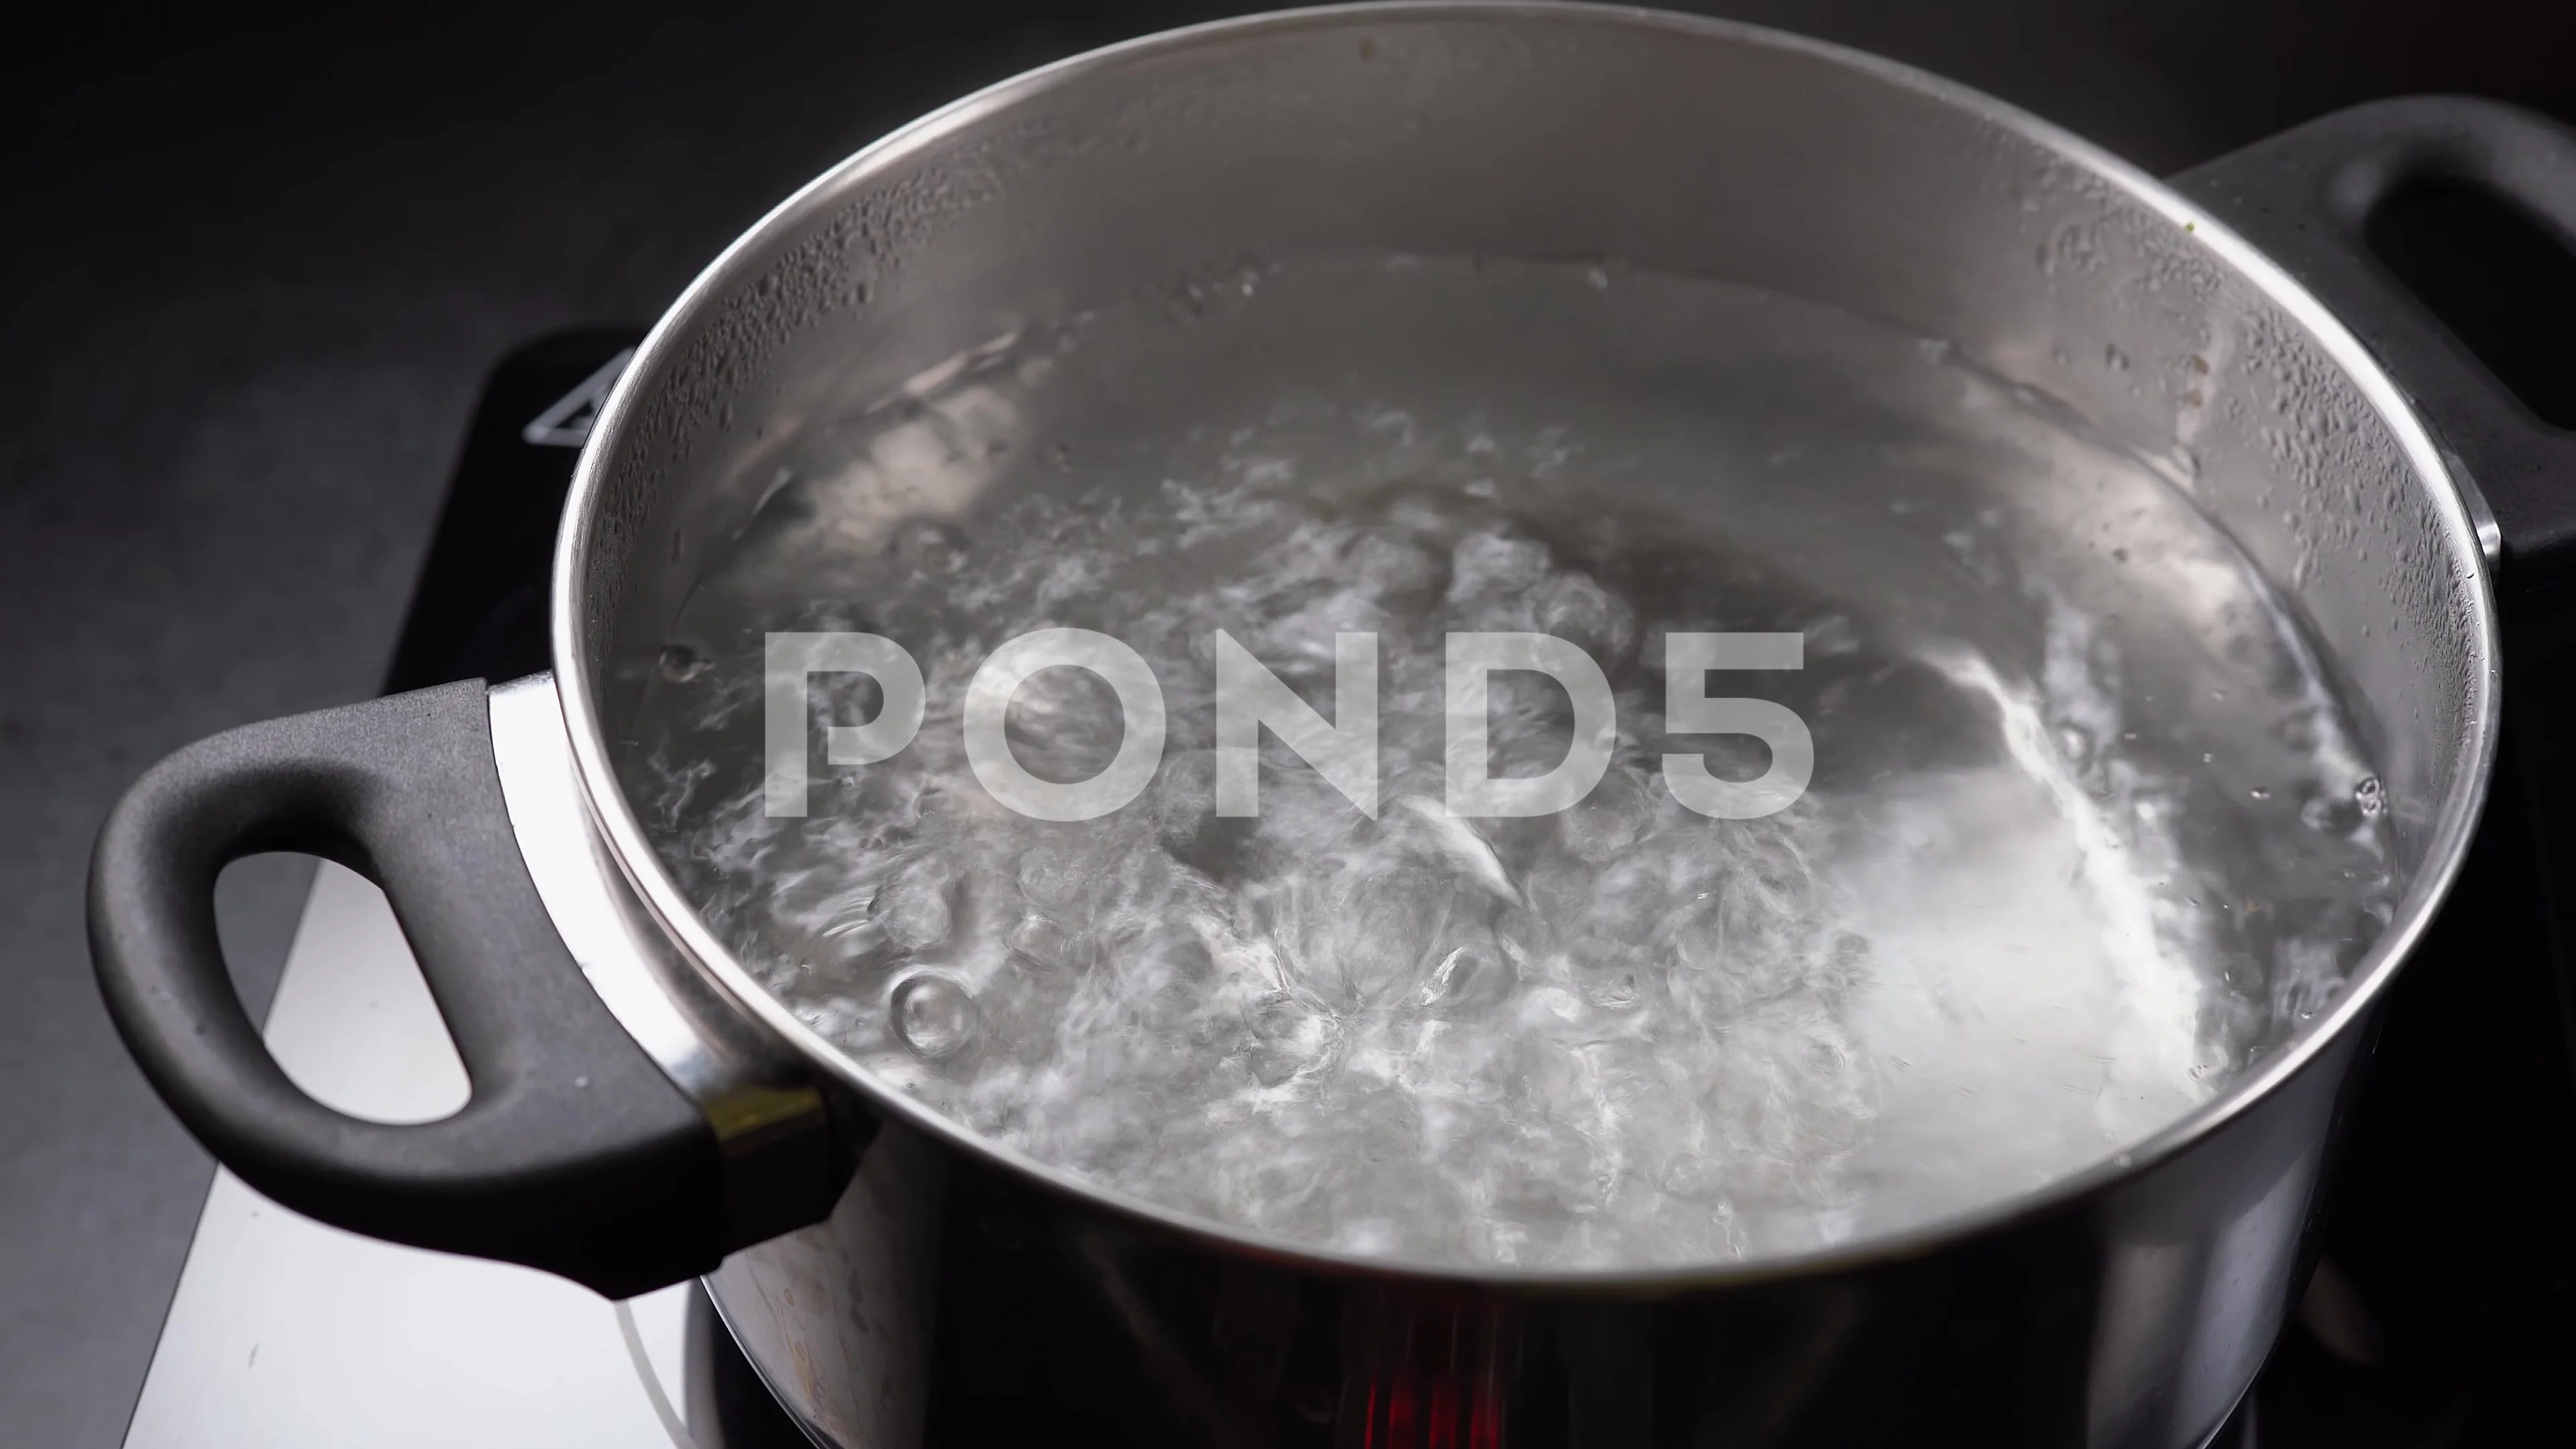 https://images.pond5.com/boil-water-pot-dark-background-footage-141919494_prevstill.jpeg